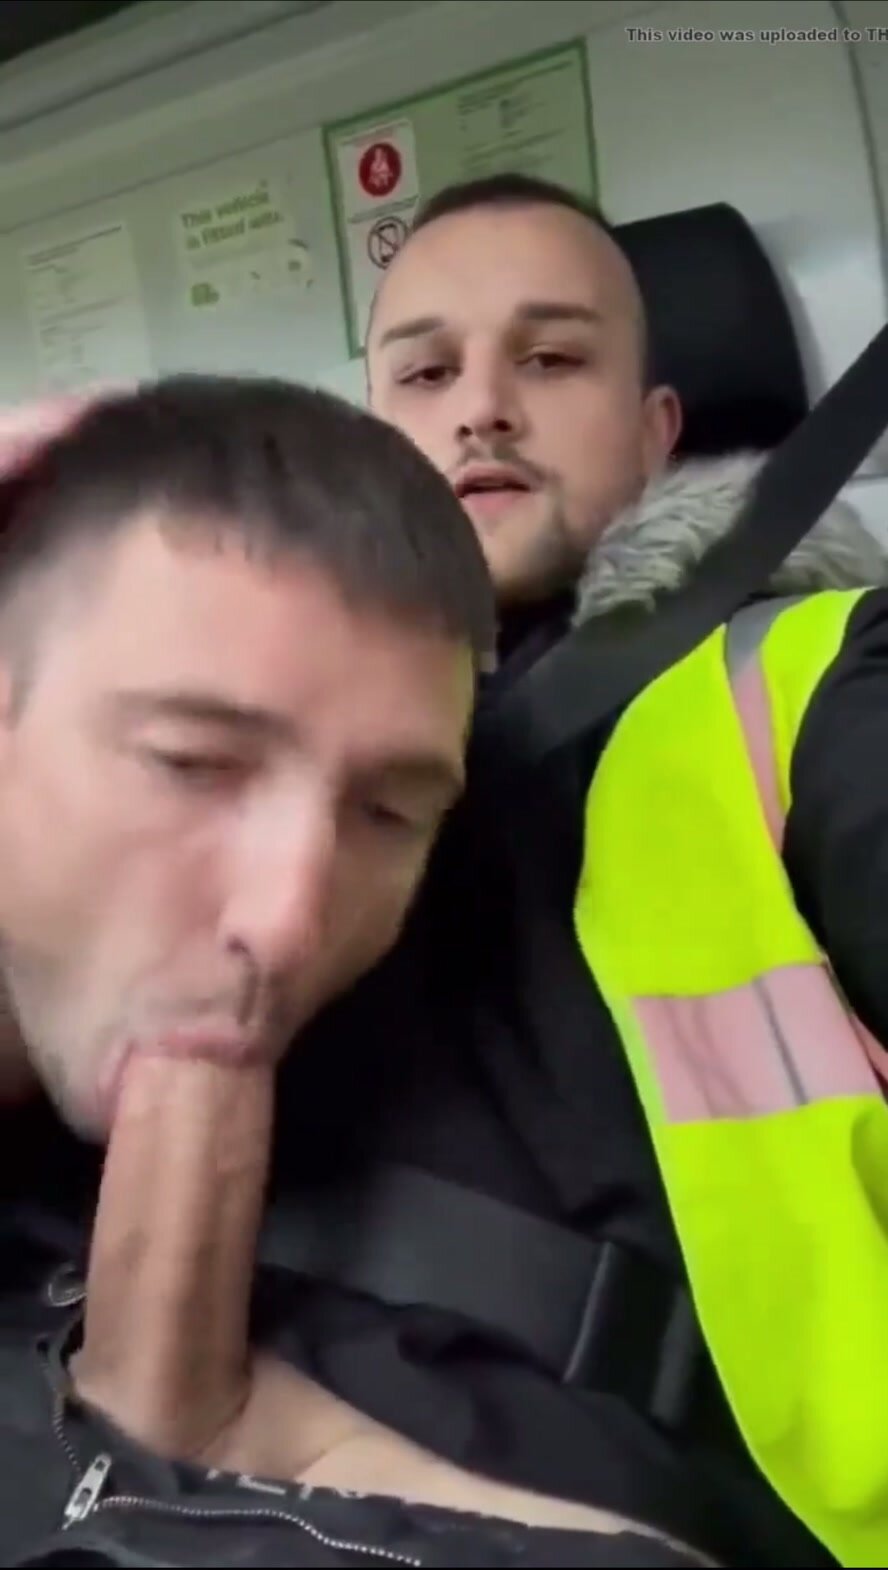 Dublin inner city lads sucking cock in work van